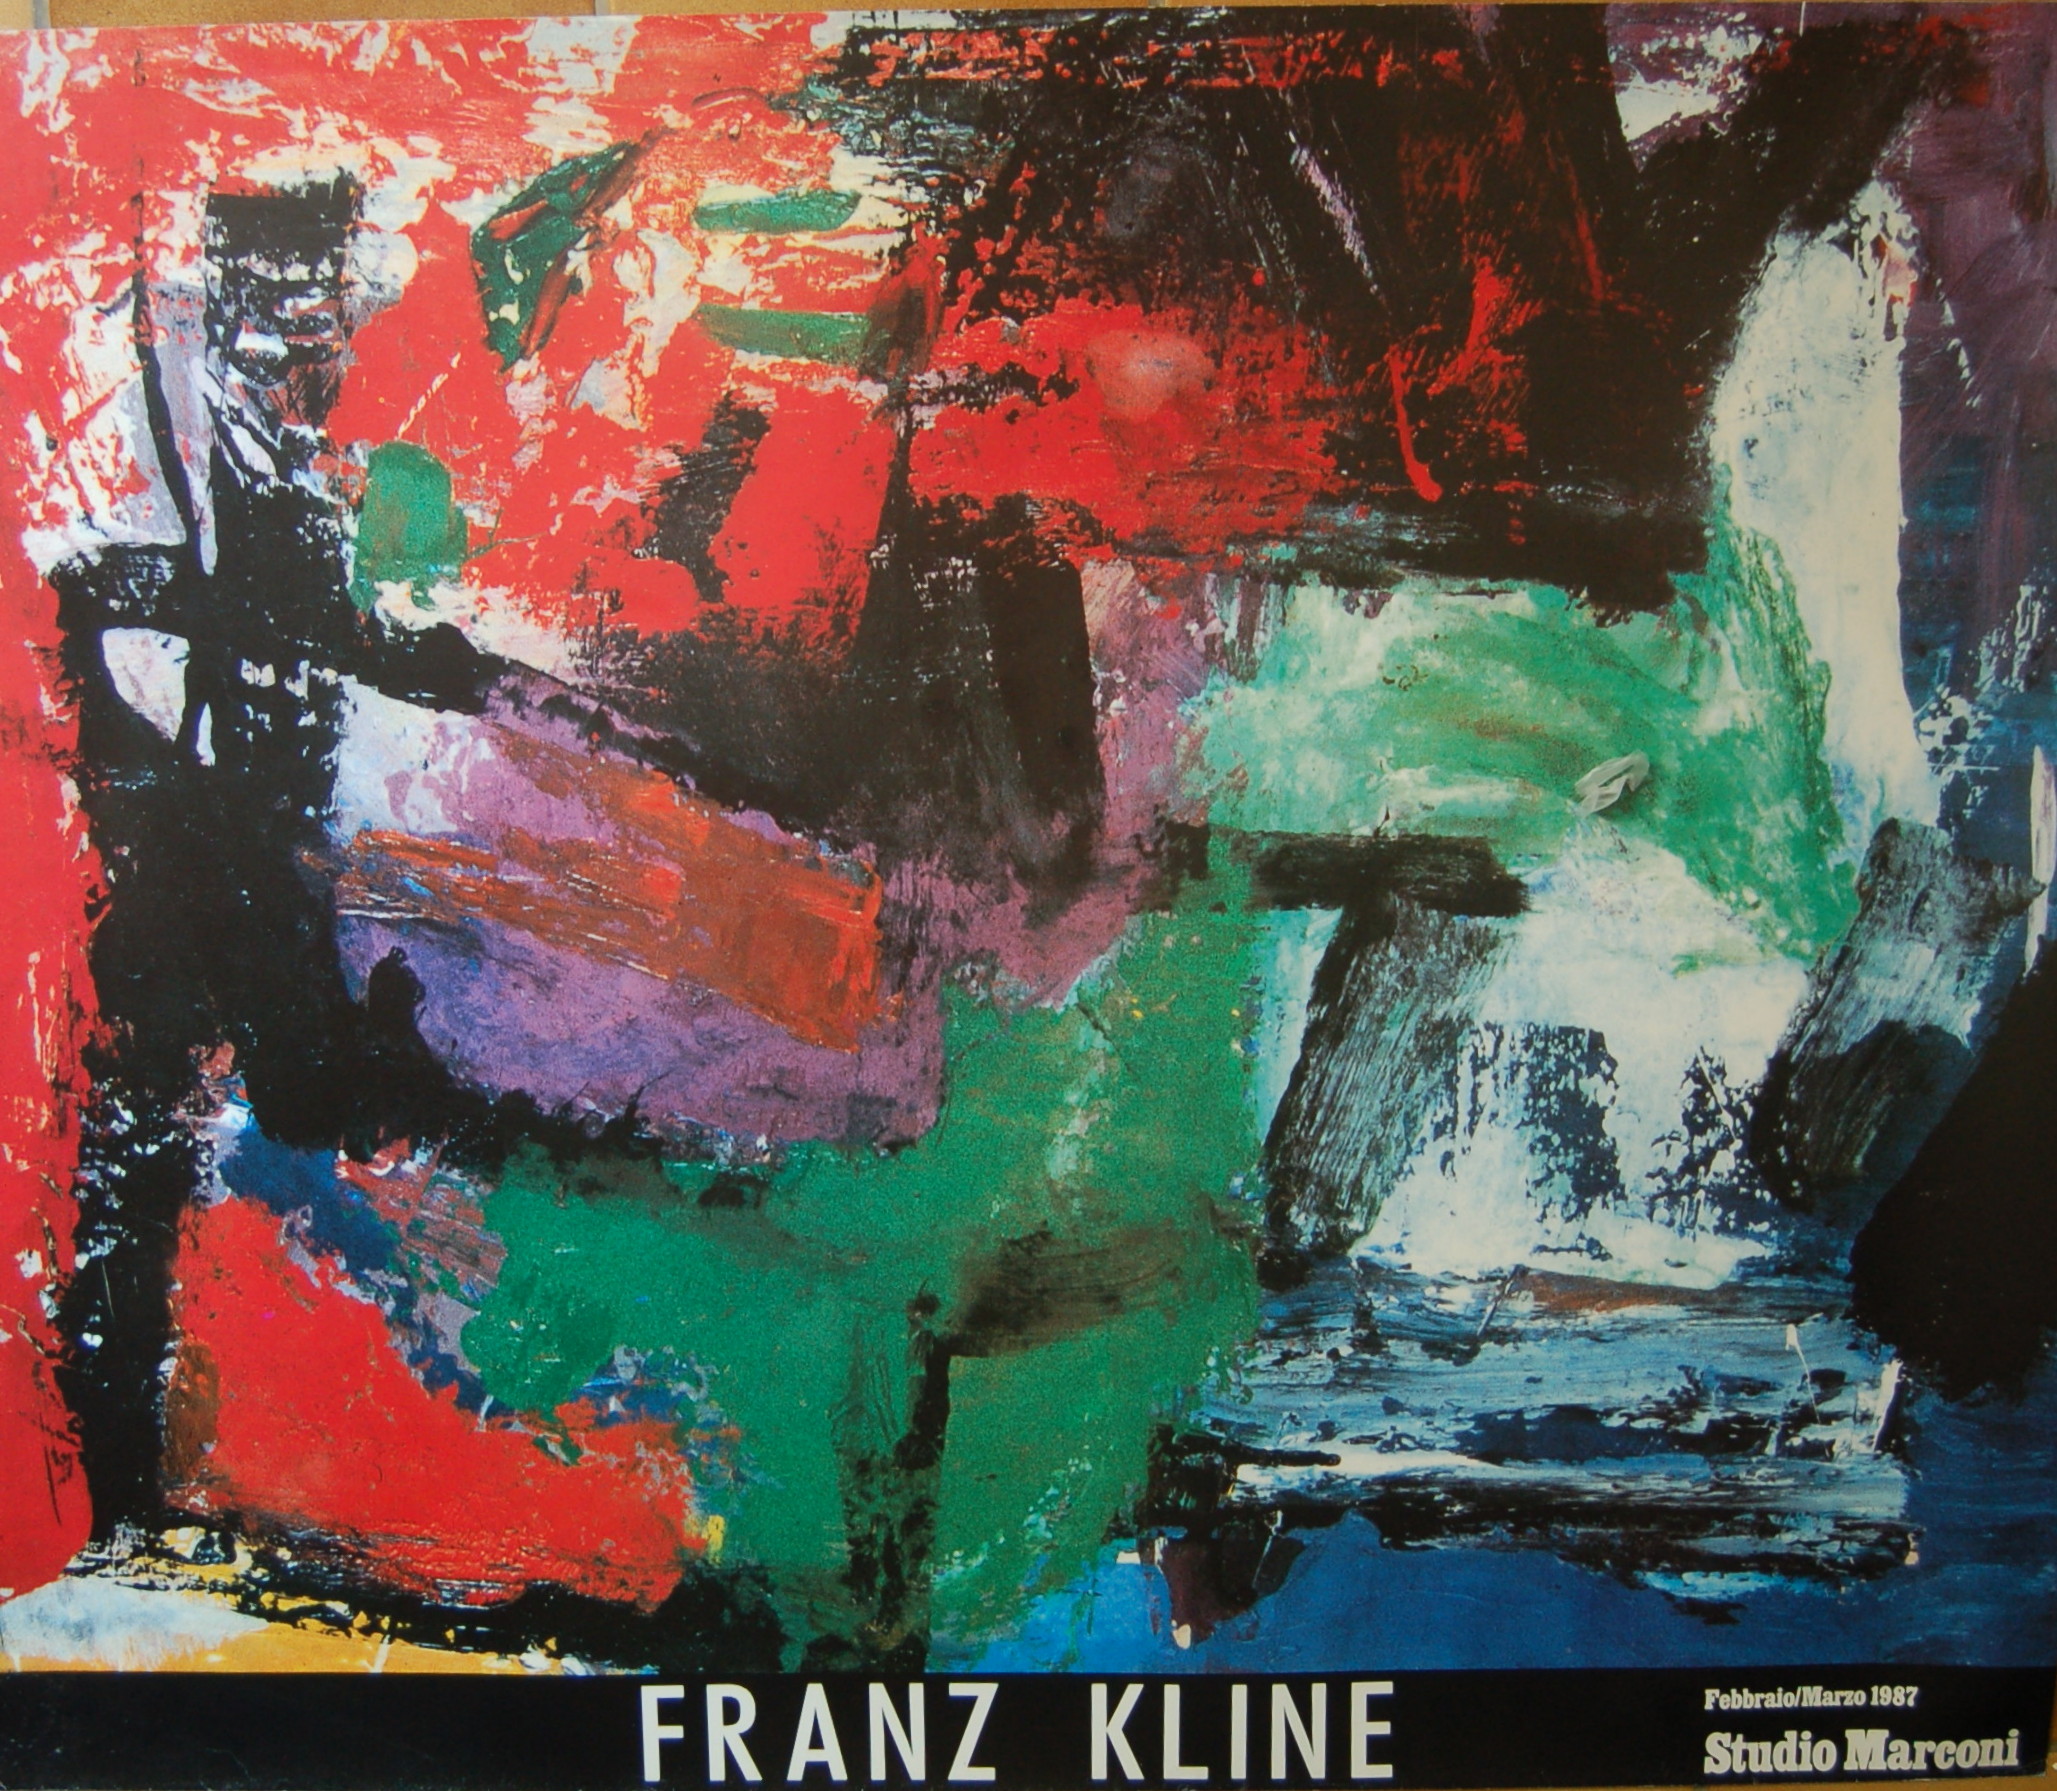 FRANZ KLINE (1910-1962) affiche studio Marconi 1987